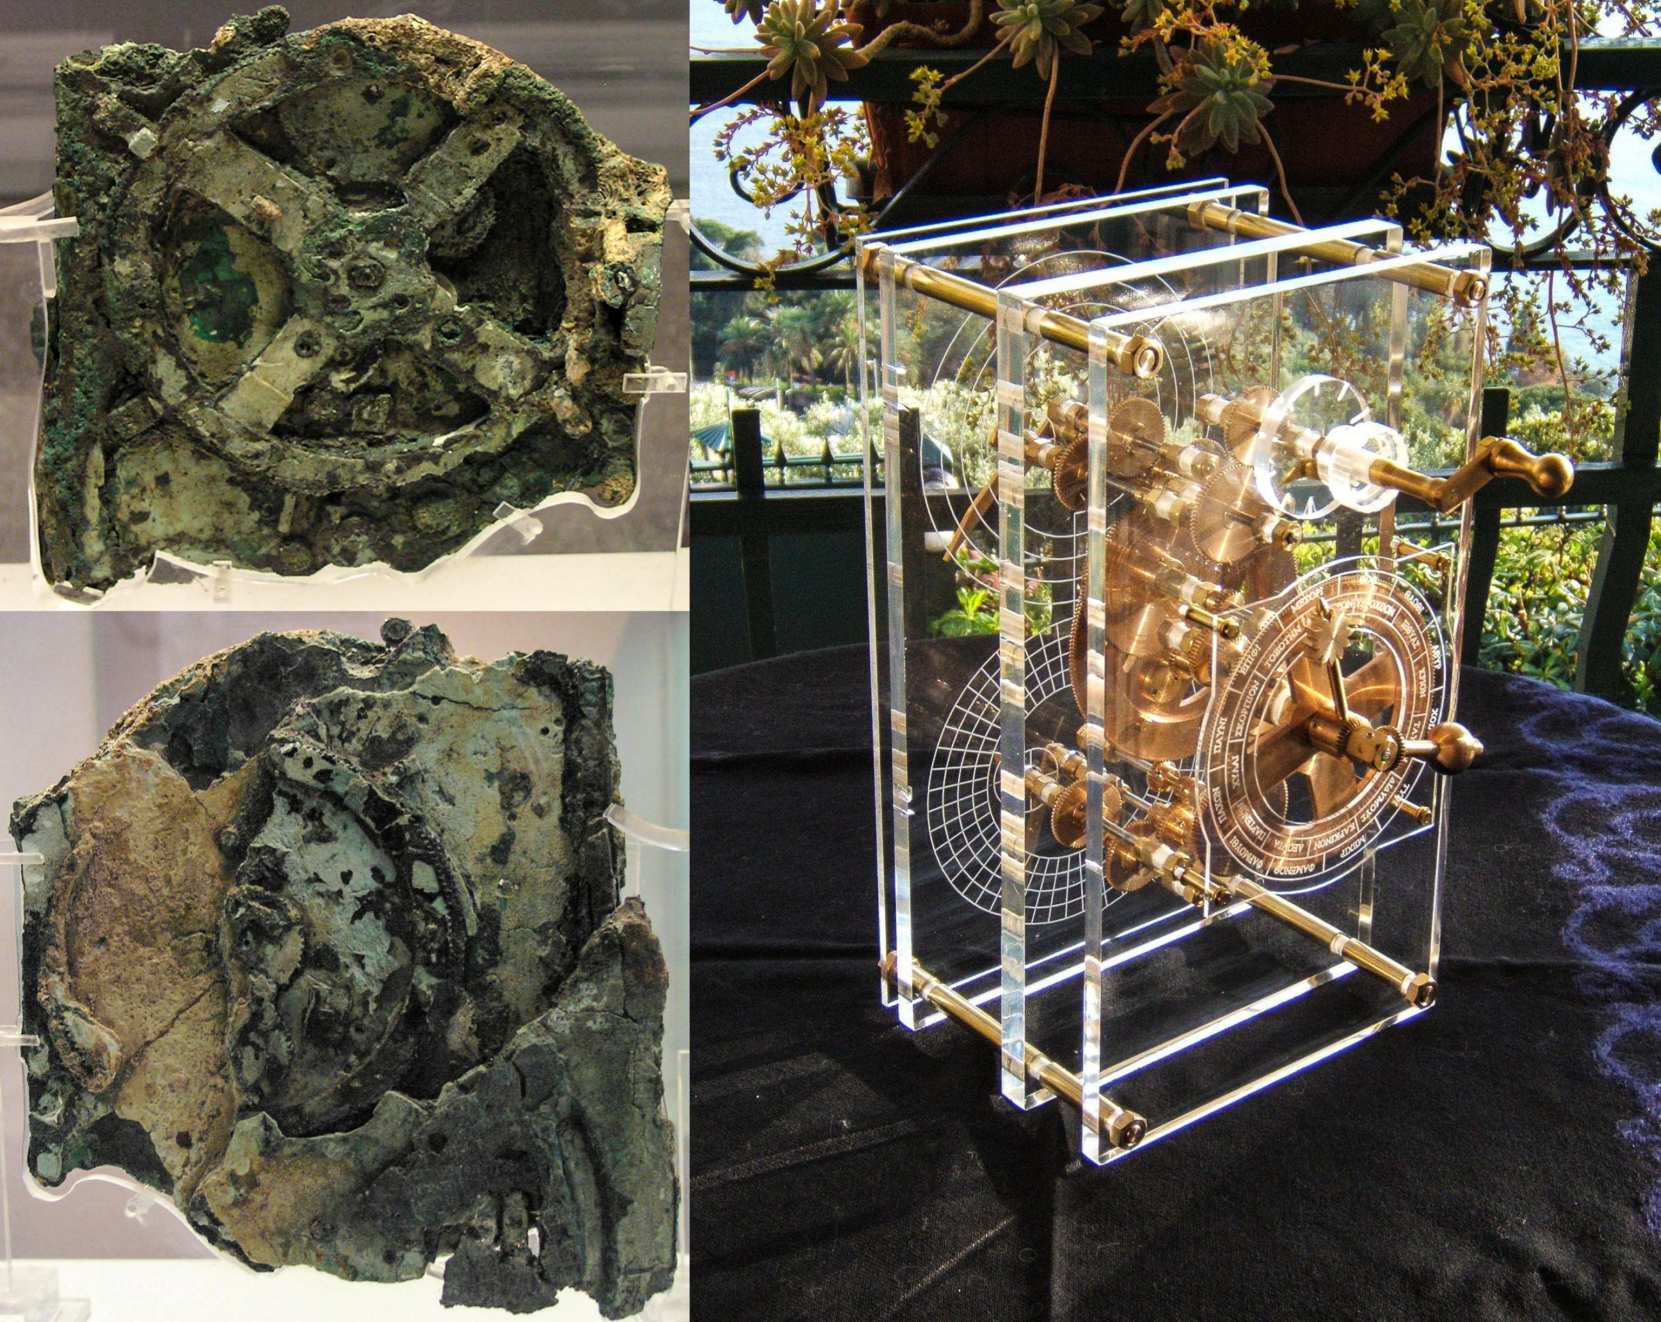 យន្តការ Antikythera (ការកសាងឡើងវិញដែលអាចមើលឃើញនៅក្នុងរូបភាពនៅខាងស្តាំ) មាន 37 ប្រភេទផ្សេងគ្នានៃ gears និងមានភាពស្មុគ្រស្មាញណាស់ដែលមនុស្សជាច្រើនចាត់ទុកថាវាជាកុំព្យូទ័រអាណាឡូកដំបូងដែលបង្កើតឡើងដោយមនុស្ស។ ត្រូវបានរកឃើញនៅក្នុងប្រអប់ឈើទំហំ 340 mm × 180 mm × 90 mm ឧបករណ៍នេះគឺជាយន្តការទ្រនិចនាឡិកាដ៏ស្មុគស្មាញដែលផ្សំឡើងដោយឧបករណ៍ធ្វើពីសំរិទ្ធយ៉ាងតិច 30 សំណាញ់។ អដ្ឋិធាតុ​របស់​វា​ត្រូវ​បាន​គេ​រក​ឃើញ​ថា​ជា​បំណែក​ដាច់​ដោយ​ឡែក​ចំនួន ៨២ ដែល​ក្នុង​នោះ​មាន​តែ​ប្រាំពីរ​ប៉ុណ្ណោះ​ដែល​មាន​ឧបករណ៍​ឬ​សិលាចារឹក​សំខាន់ៗ។ ឧបករណ៍ដ៏ធំបំផុត (អាចមើលឃើញយ៉ាងច្បាស់នៅក្នុងរូបភាពនៅផ្នែកខាងលើខាងឆ្វេង) មានអង្កត់ផ្ចិតប្រហែល 82 មីលីម៉ែត្រ ហើយដើមឡើយមានធ្មេញចំនួន 140 ។